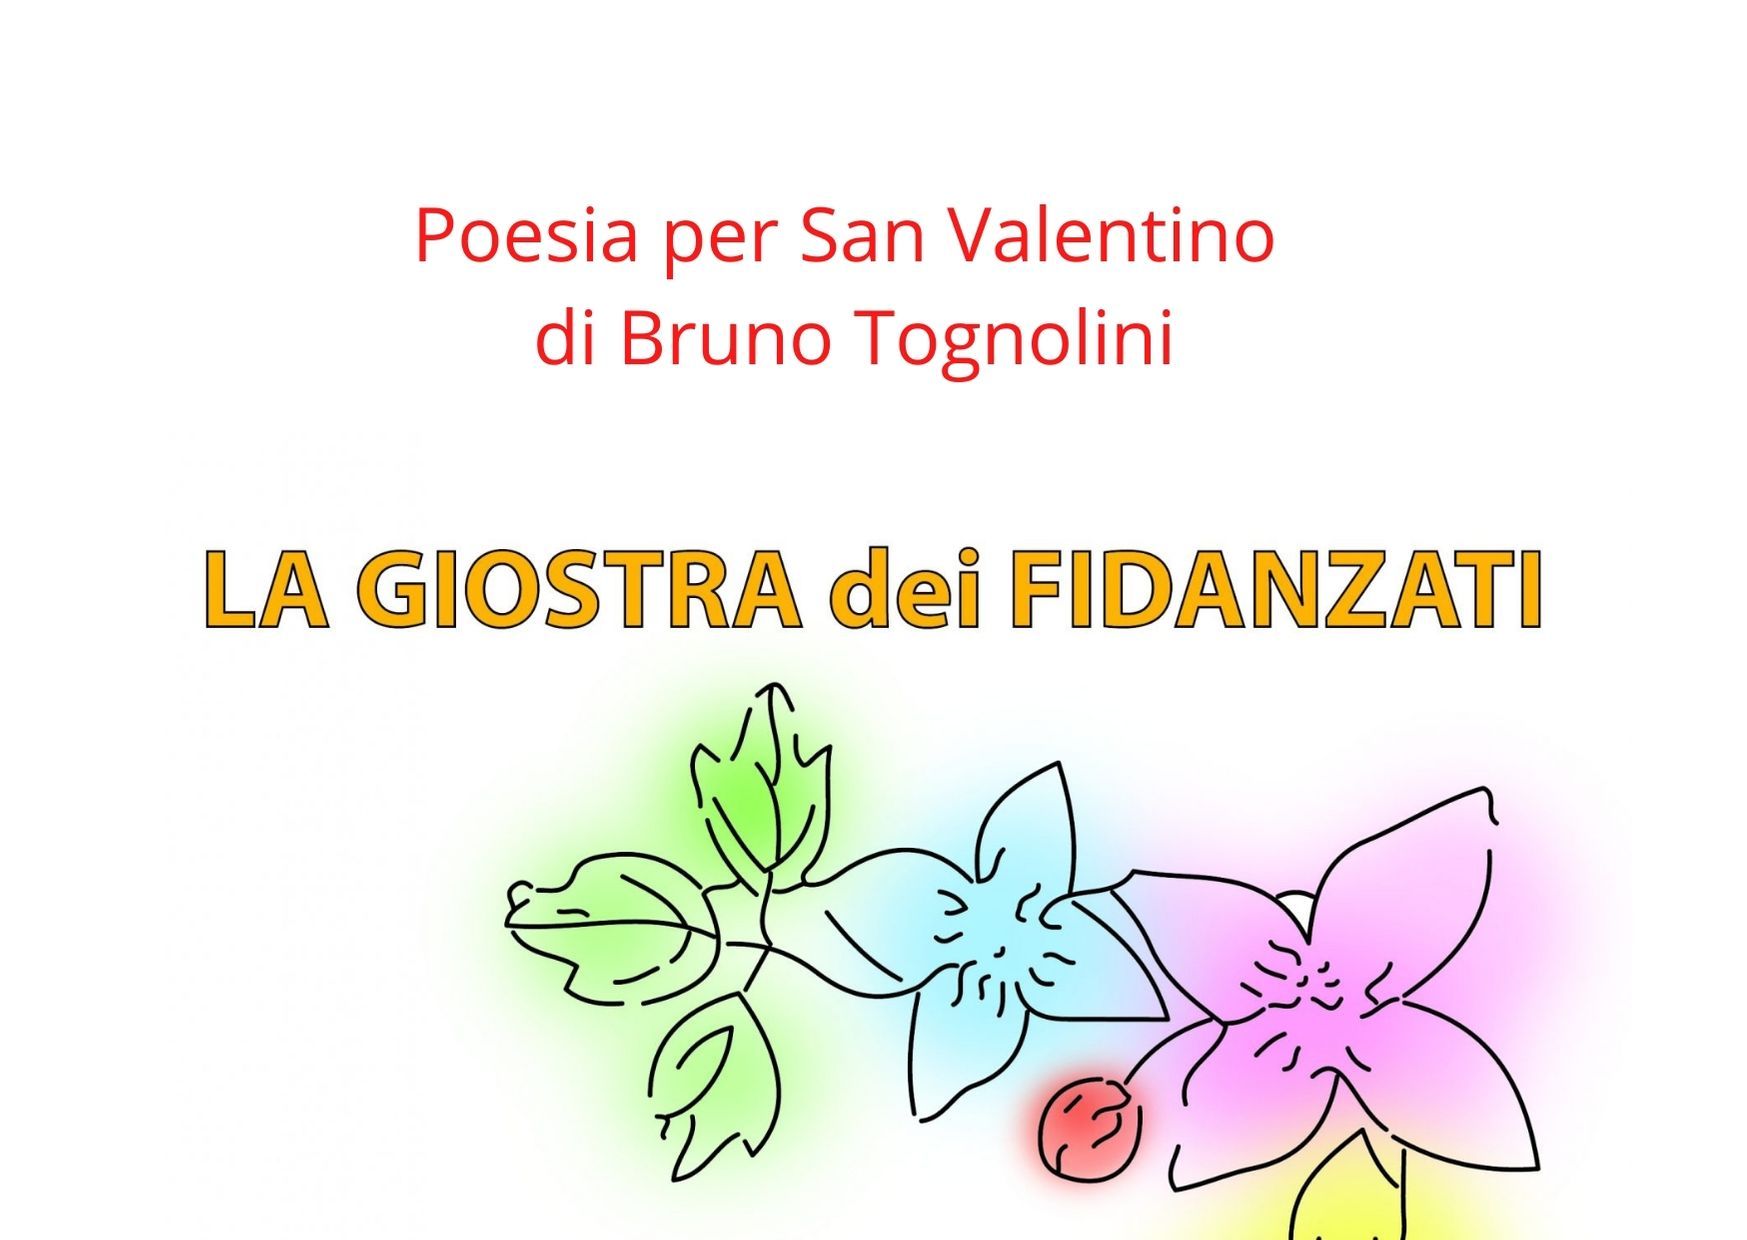 La giostra dei fidanzati - poesia per San Valentino di Bruno Tognolini